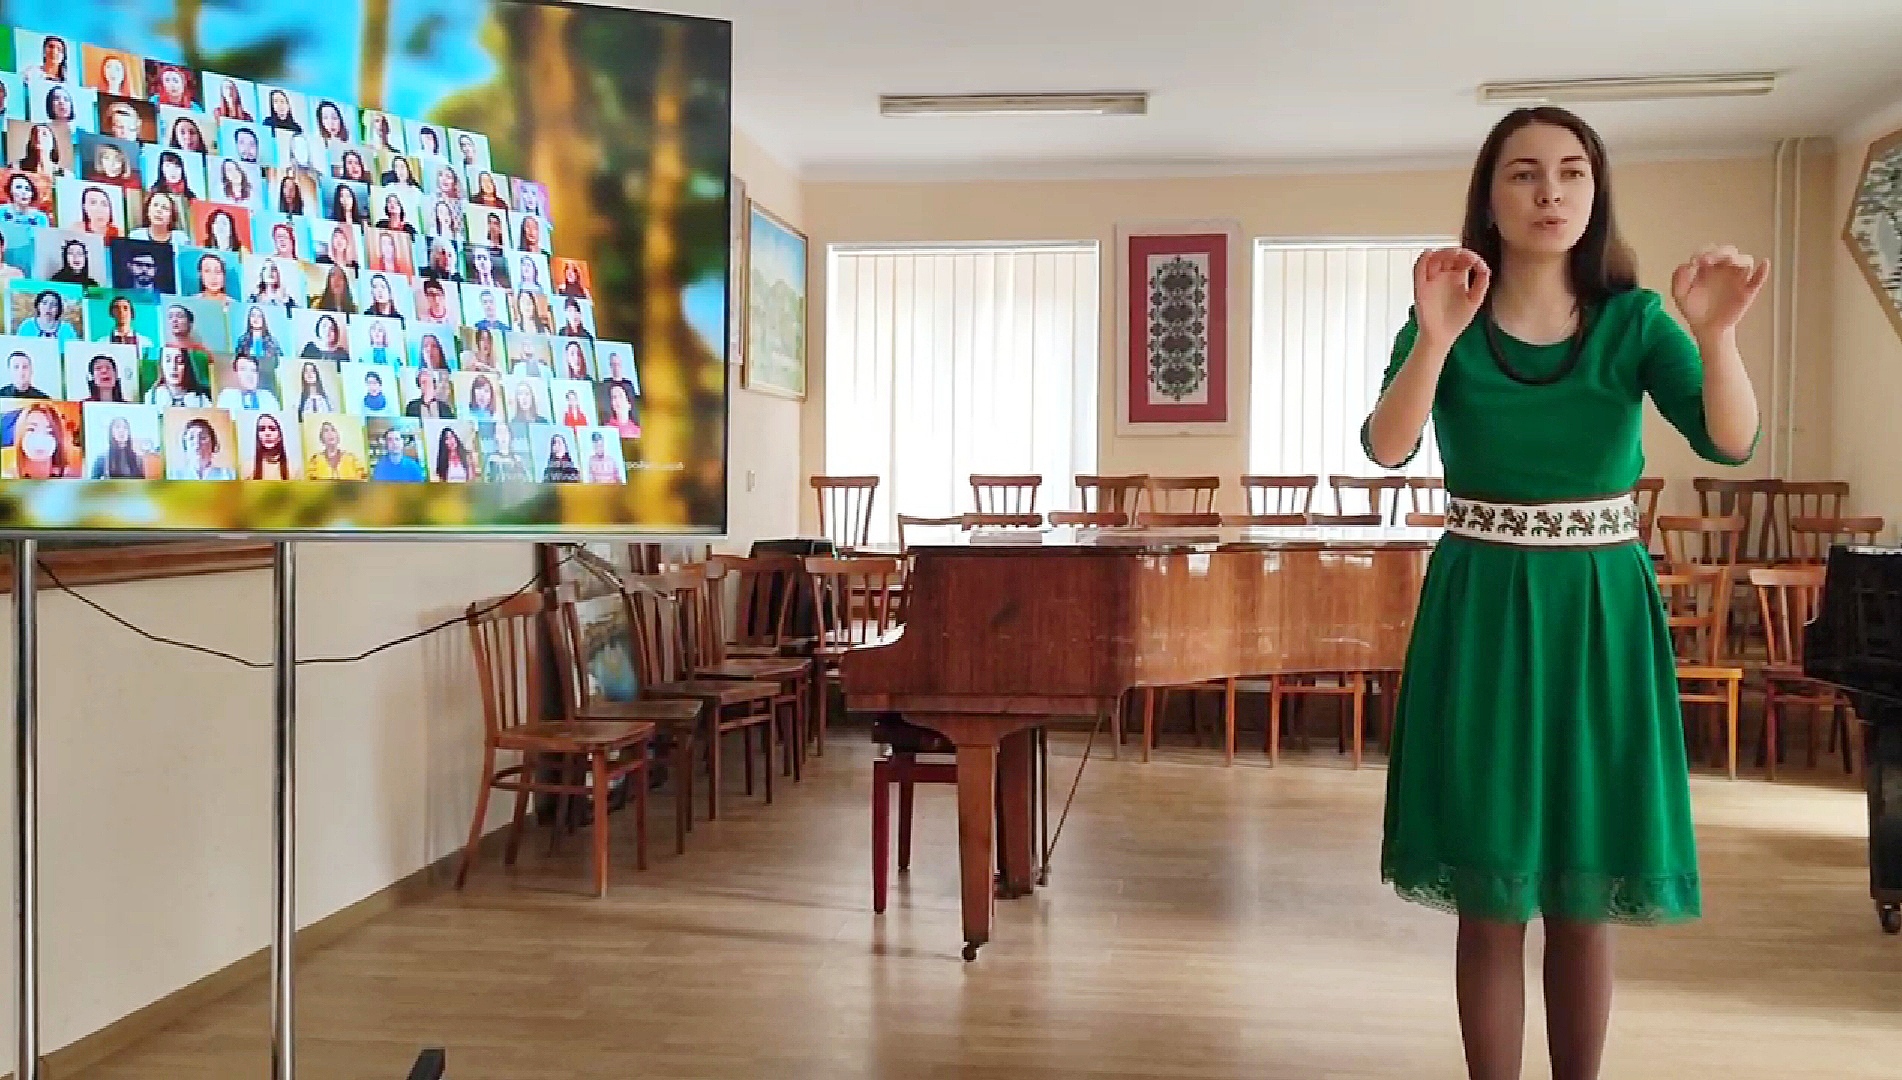 Атаманчук Елеонора диригує під звучання Віртуального хору України, у складі якого звучить і її голос